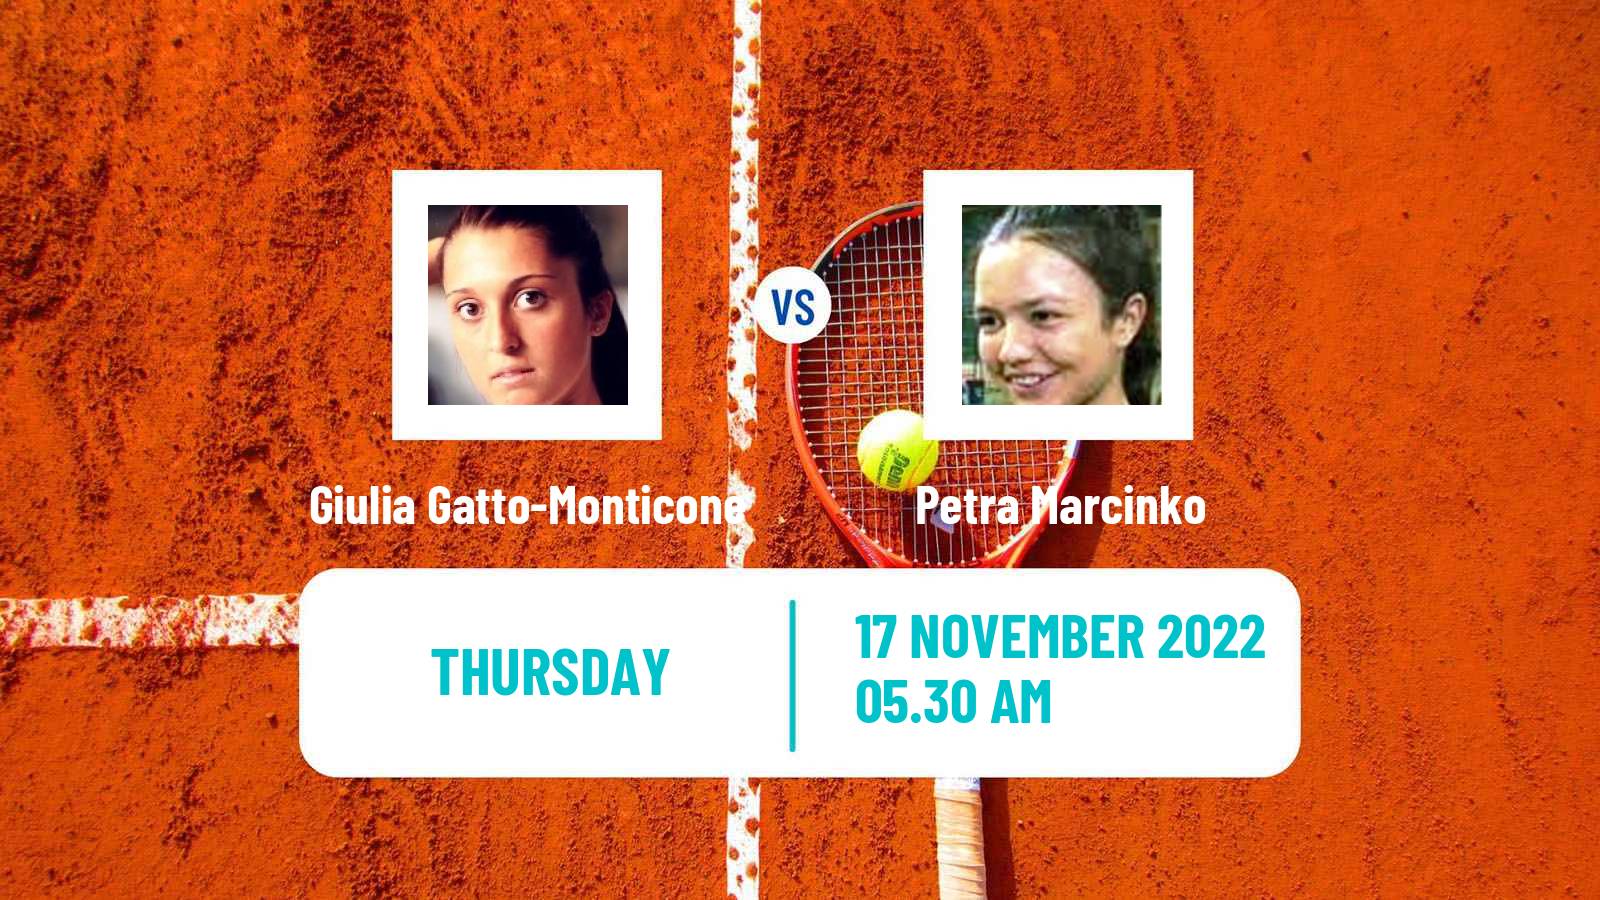 Tennis ITF Tournaments Giulia Gatto-Monticone - Petra Marcinko